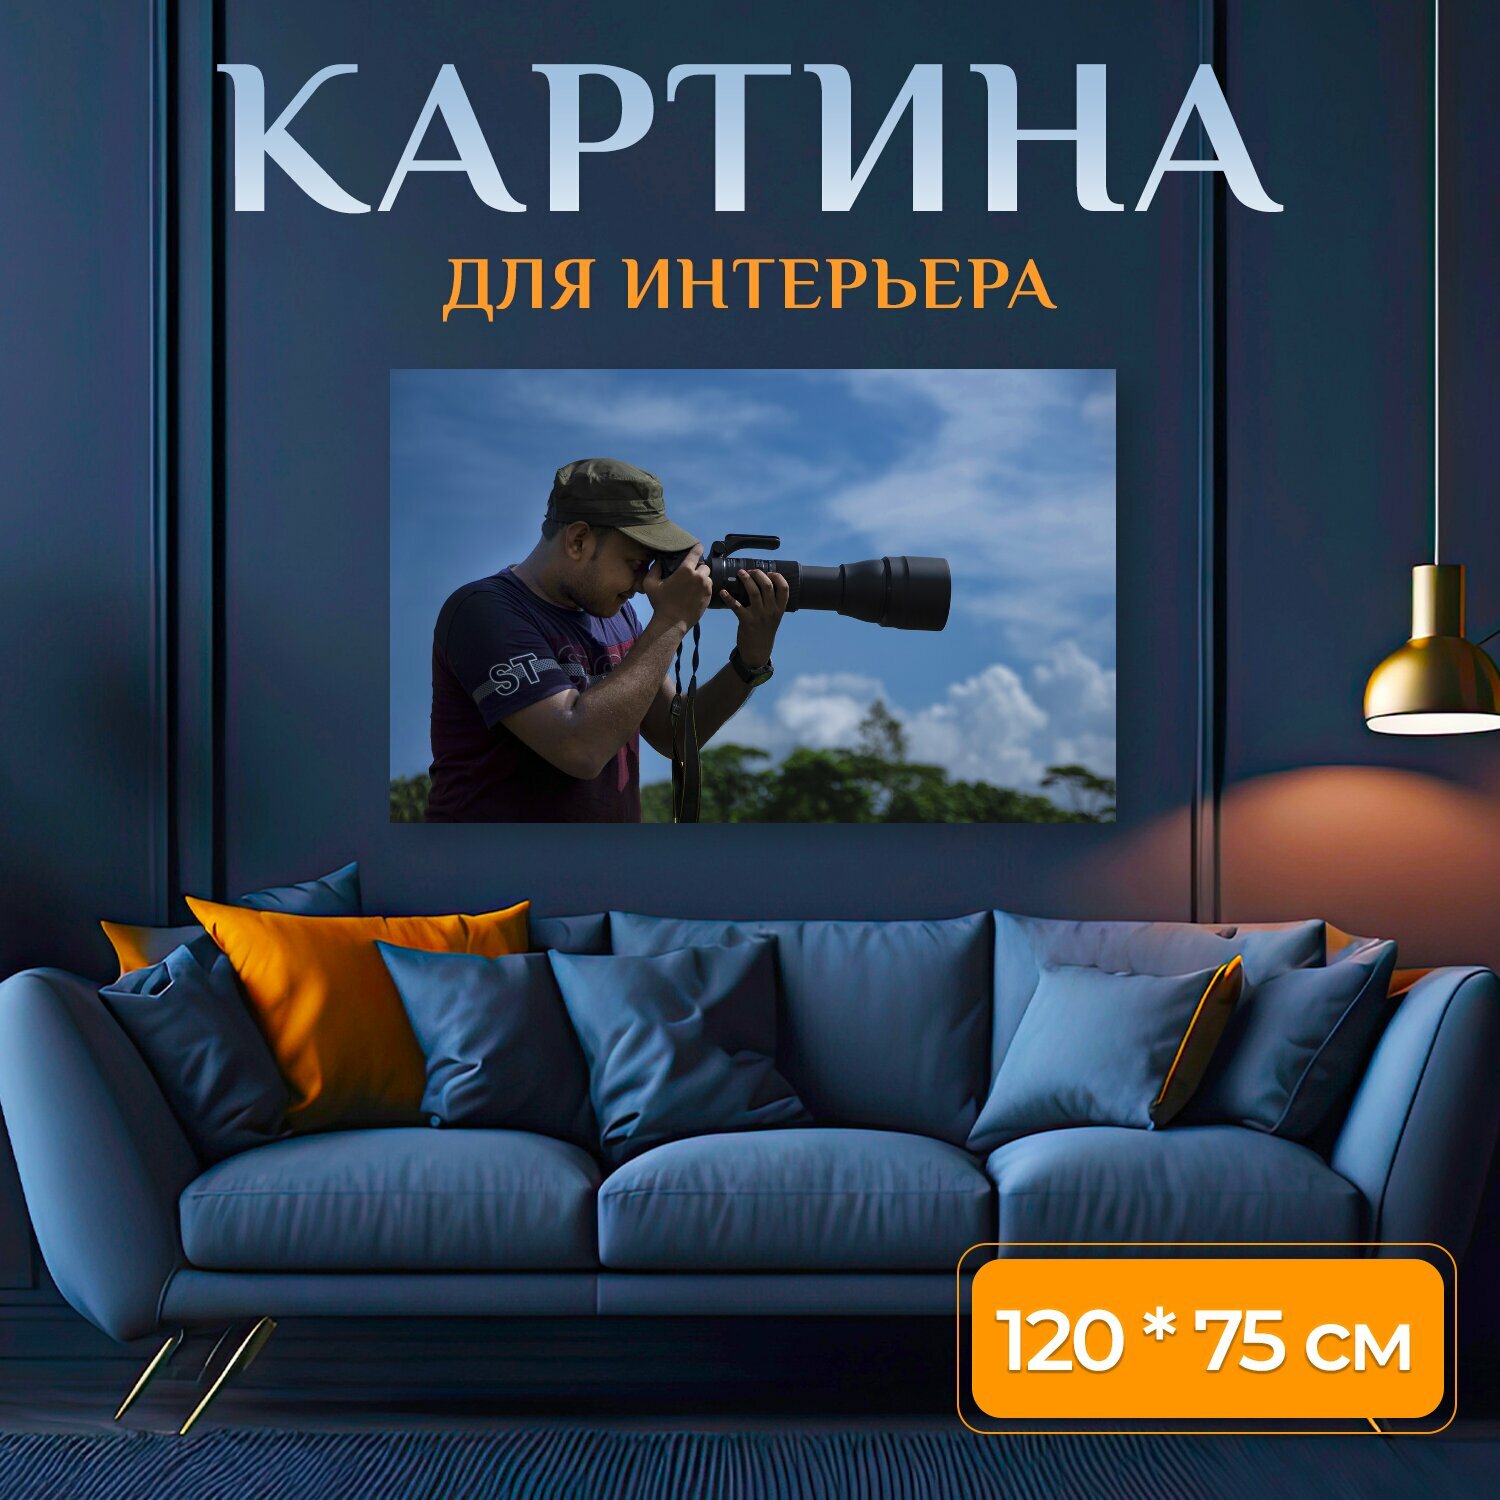 Картина на холсте "Фотограф, камера, линза" на подрамнике 120х75 см. для интерьера